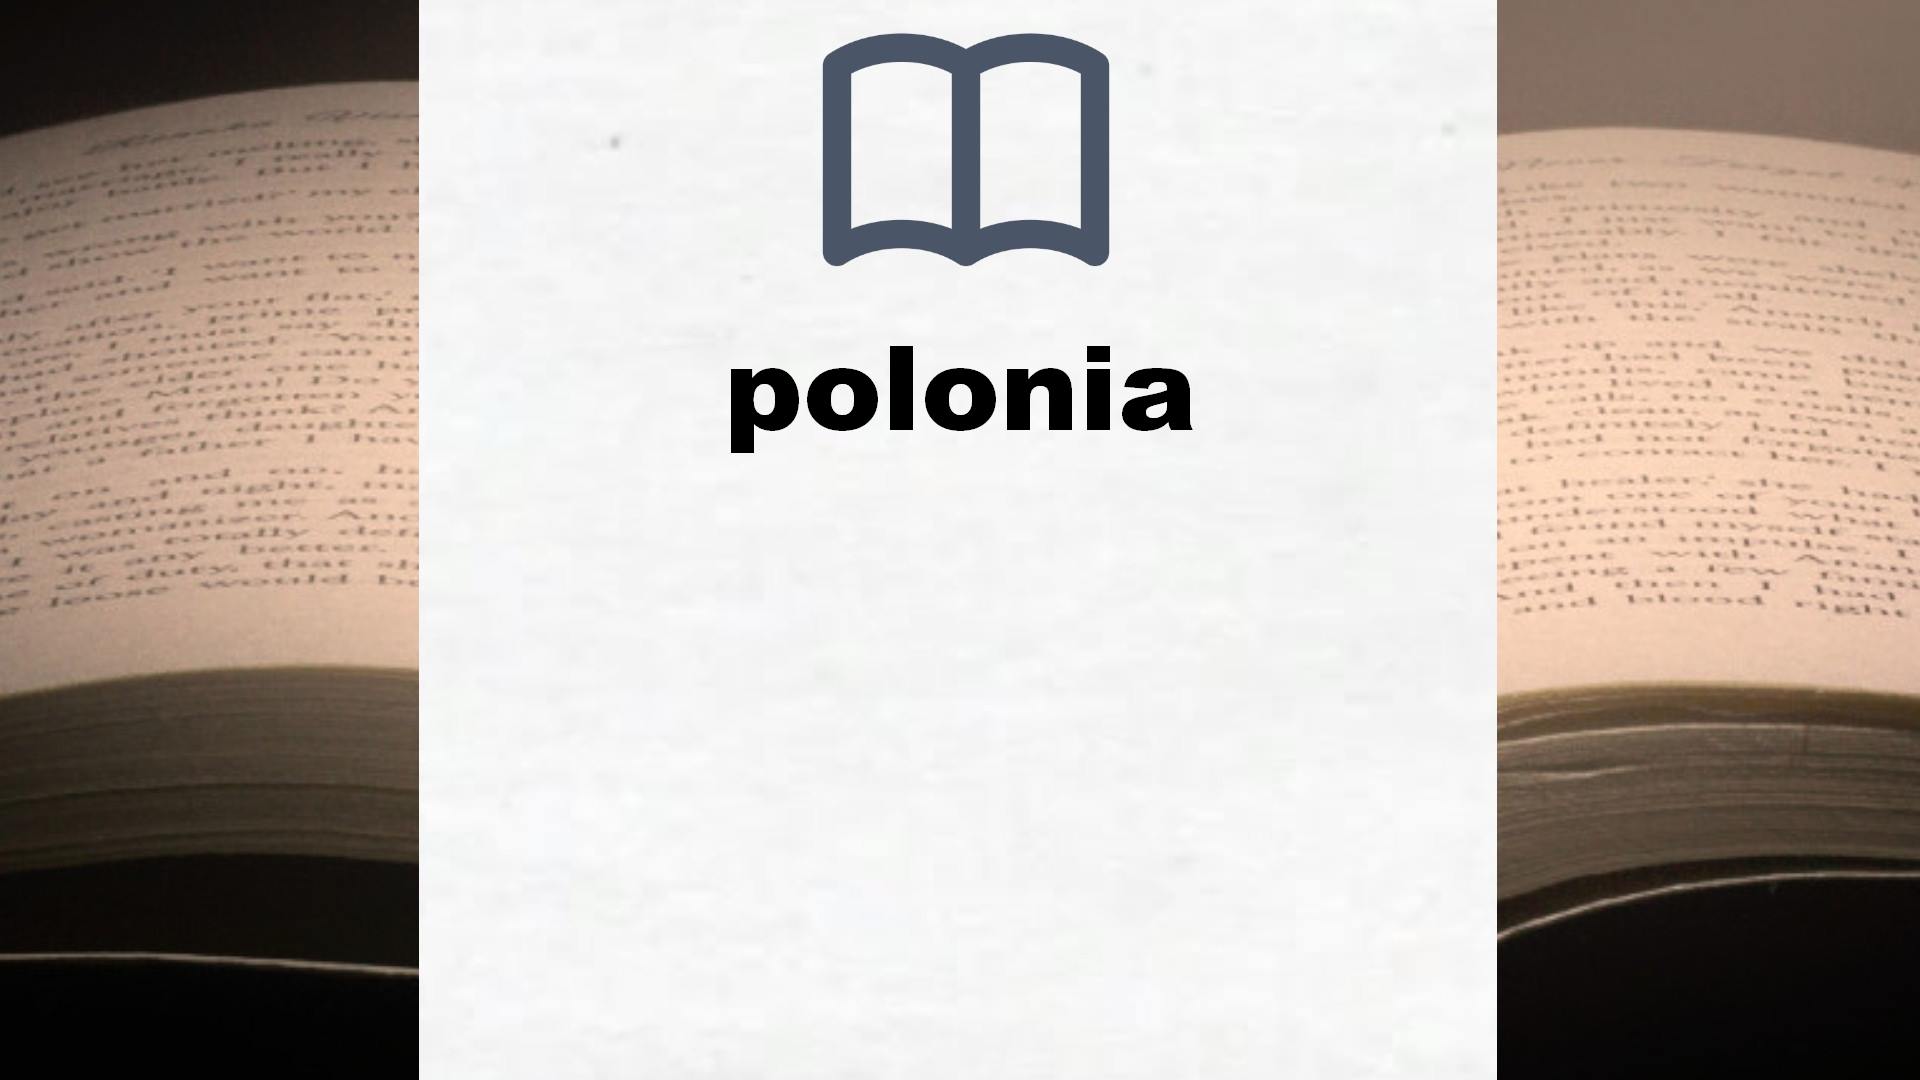 Libros sobre polonia